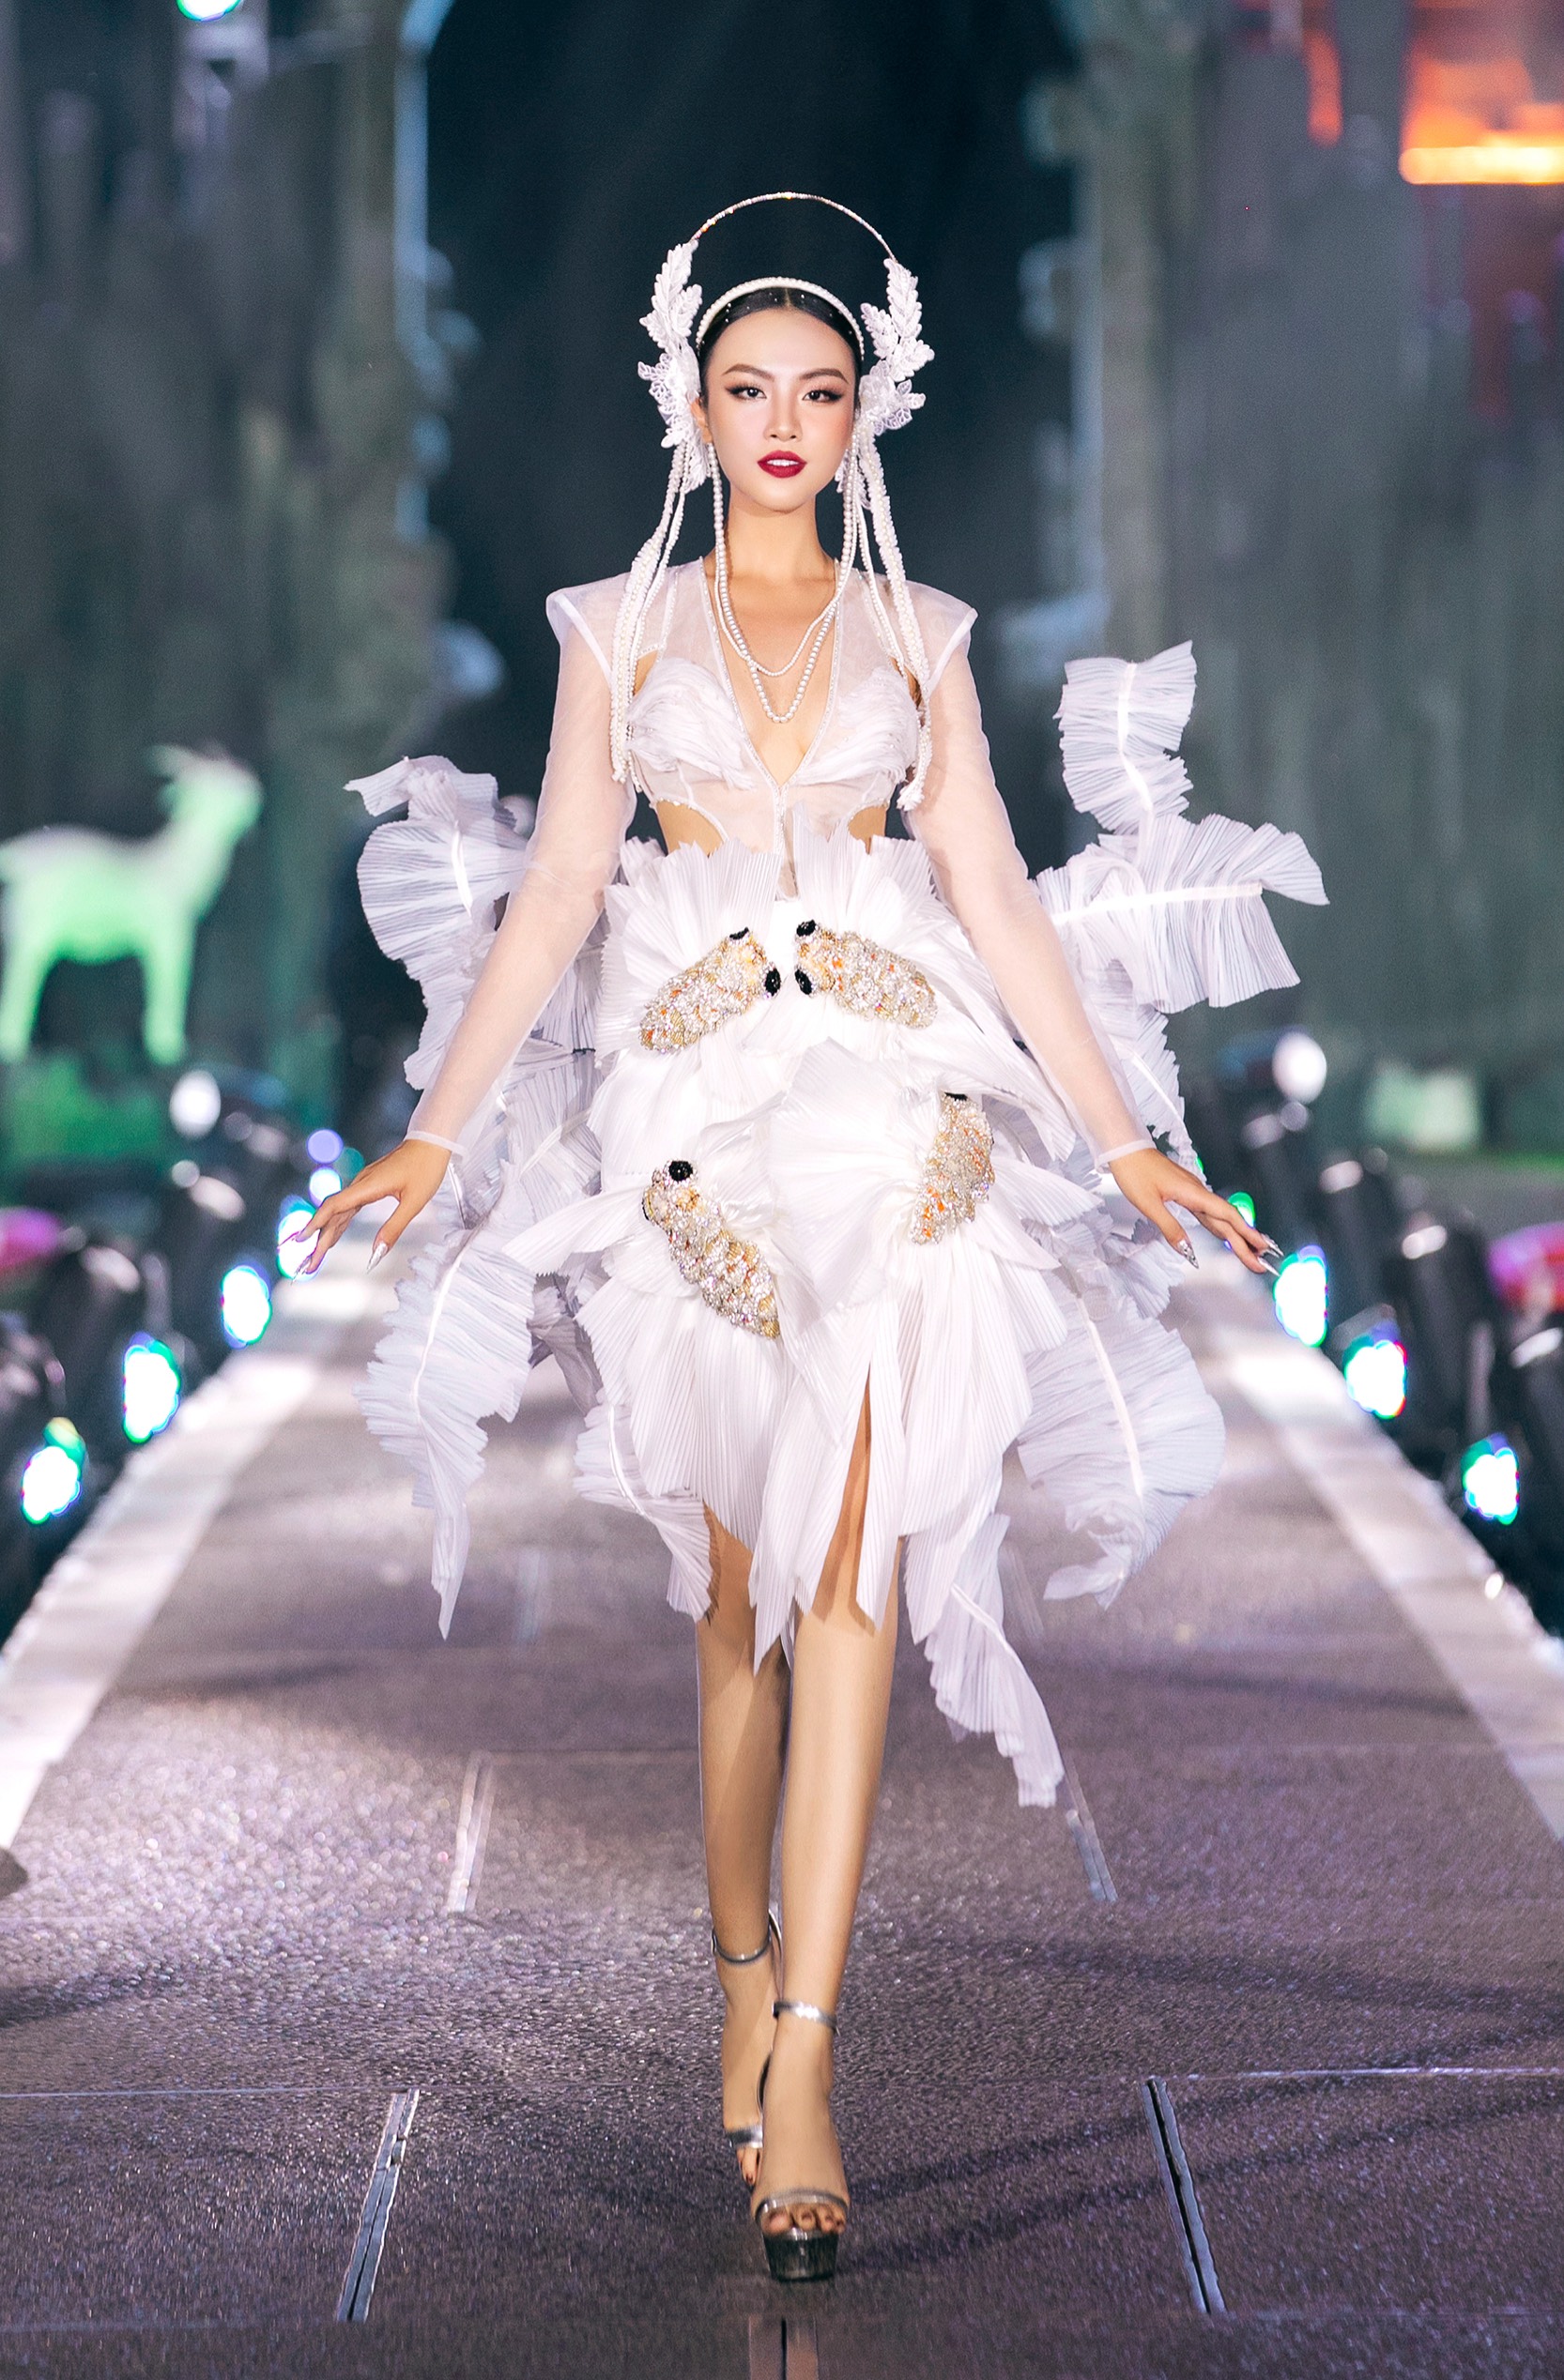 Hoa hậu H’Hen Niê hóa Phượng hoàng lửa trên sàn diễn thời trang - ảnh 4